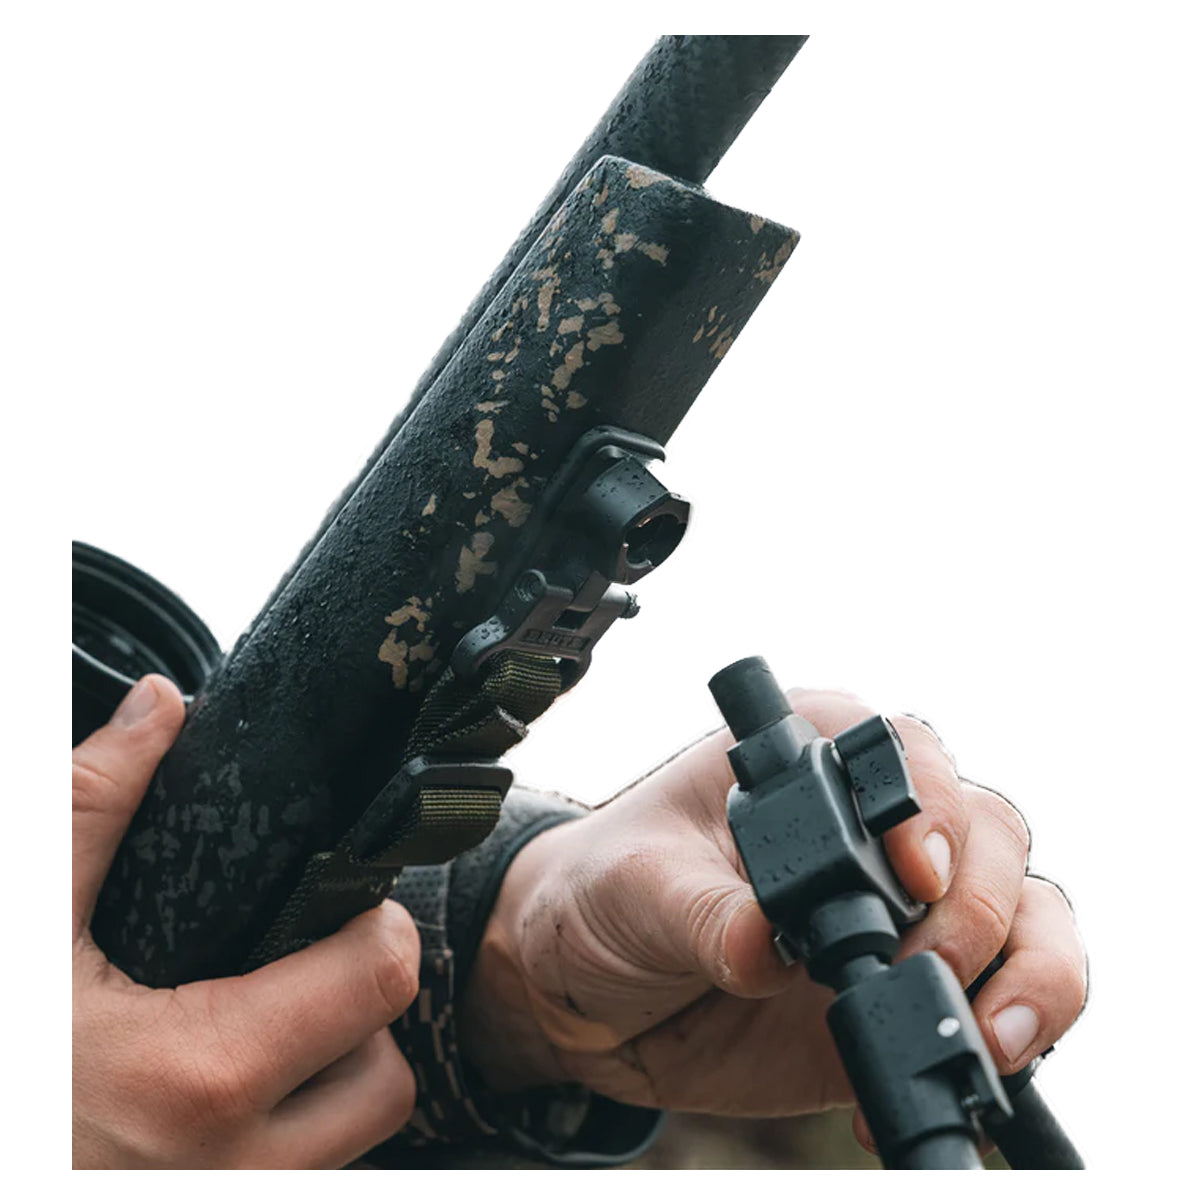 Spartan Precision Equipment Classic Rifle Adapter in  by GOHUNT | Spartan Precision Equipment - GOHUNT Shop